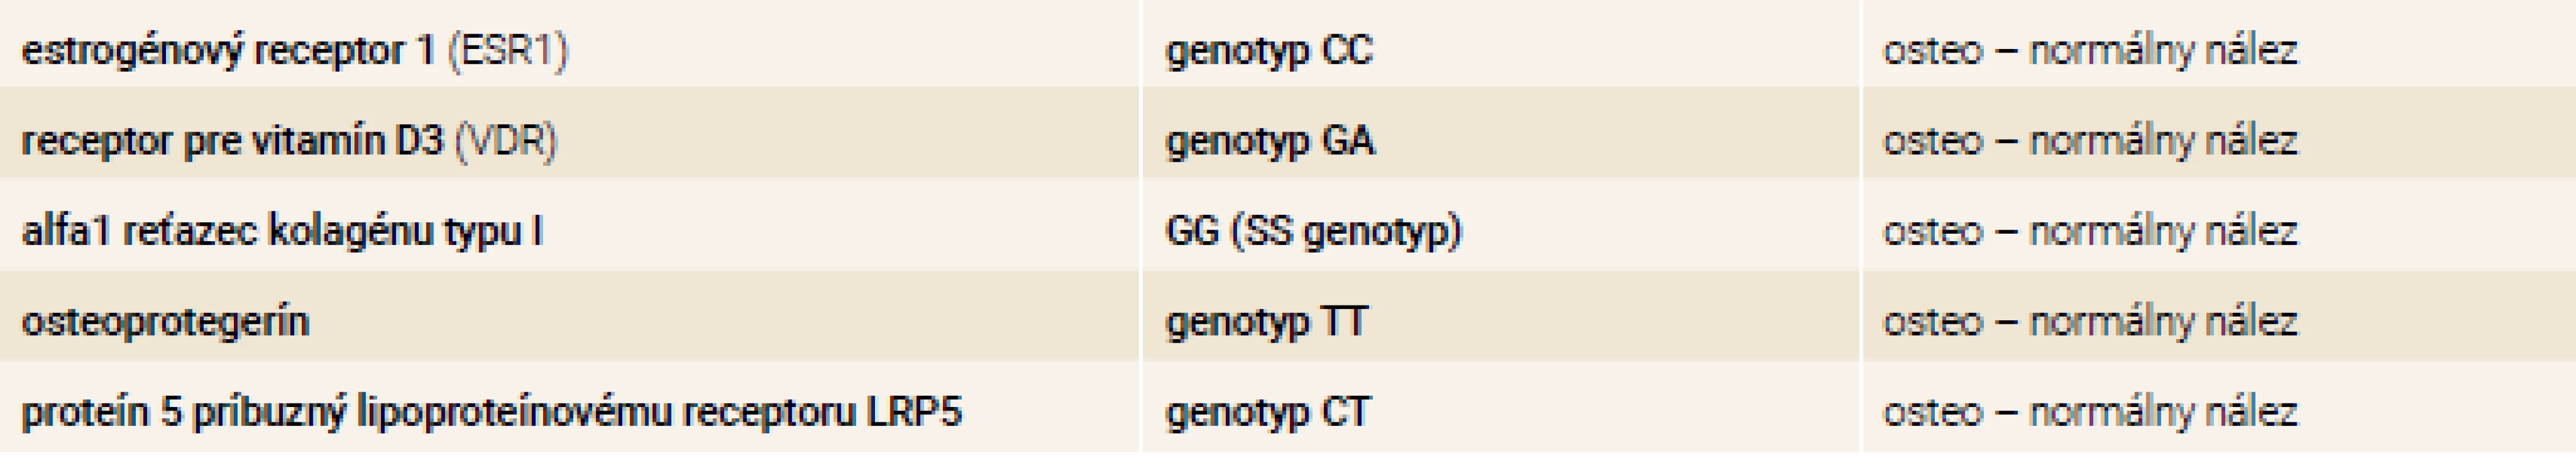 Výsledky osteogenetického vyšetrenia pomocou PCR – genotypy 7/2017